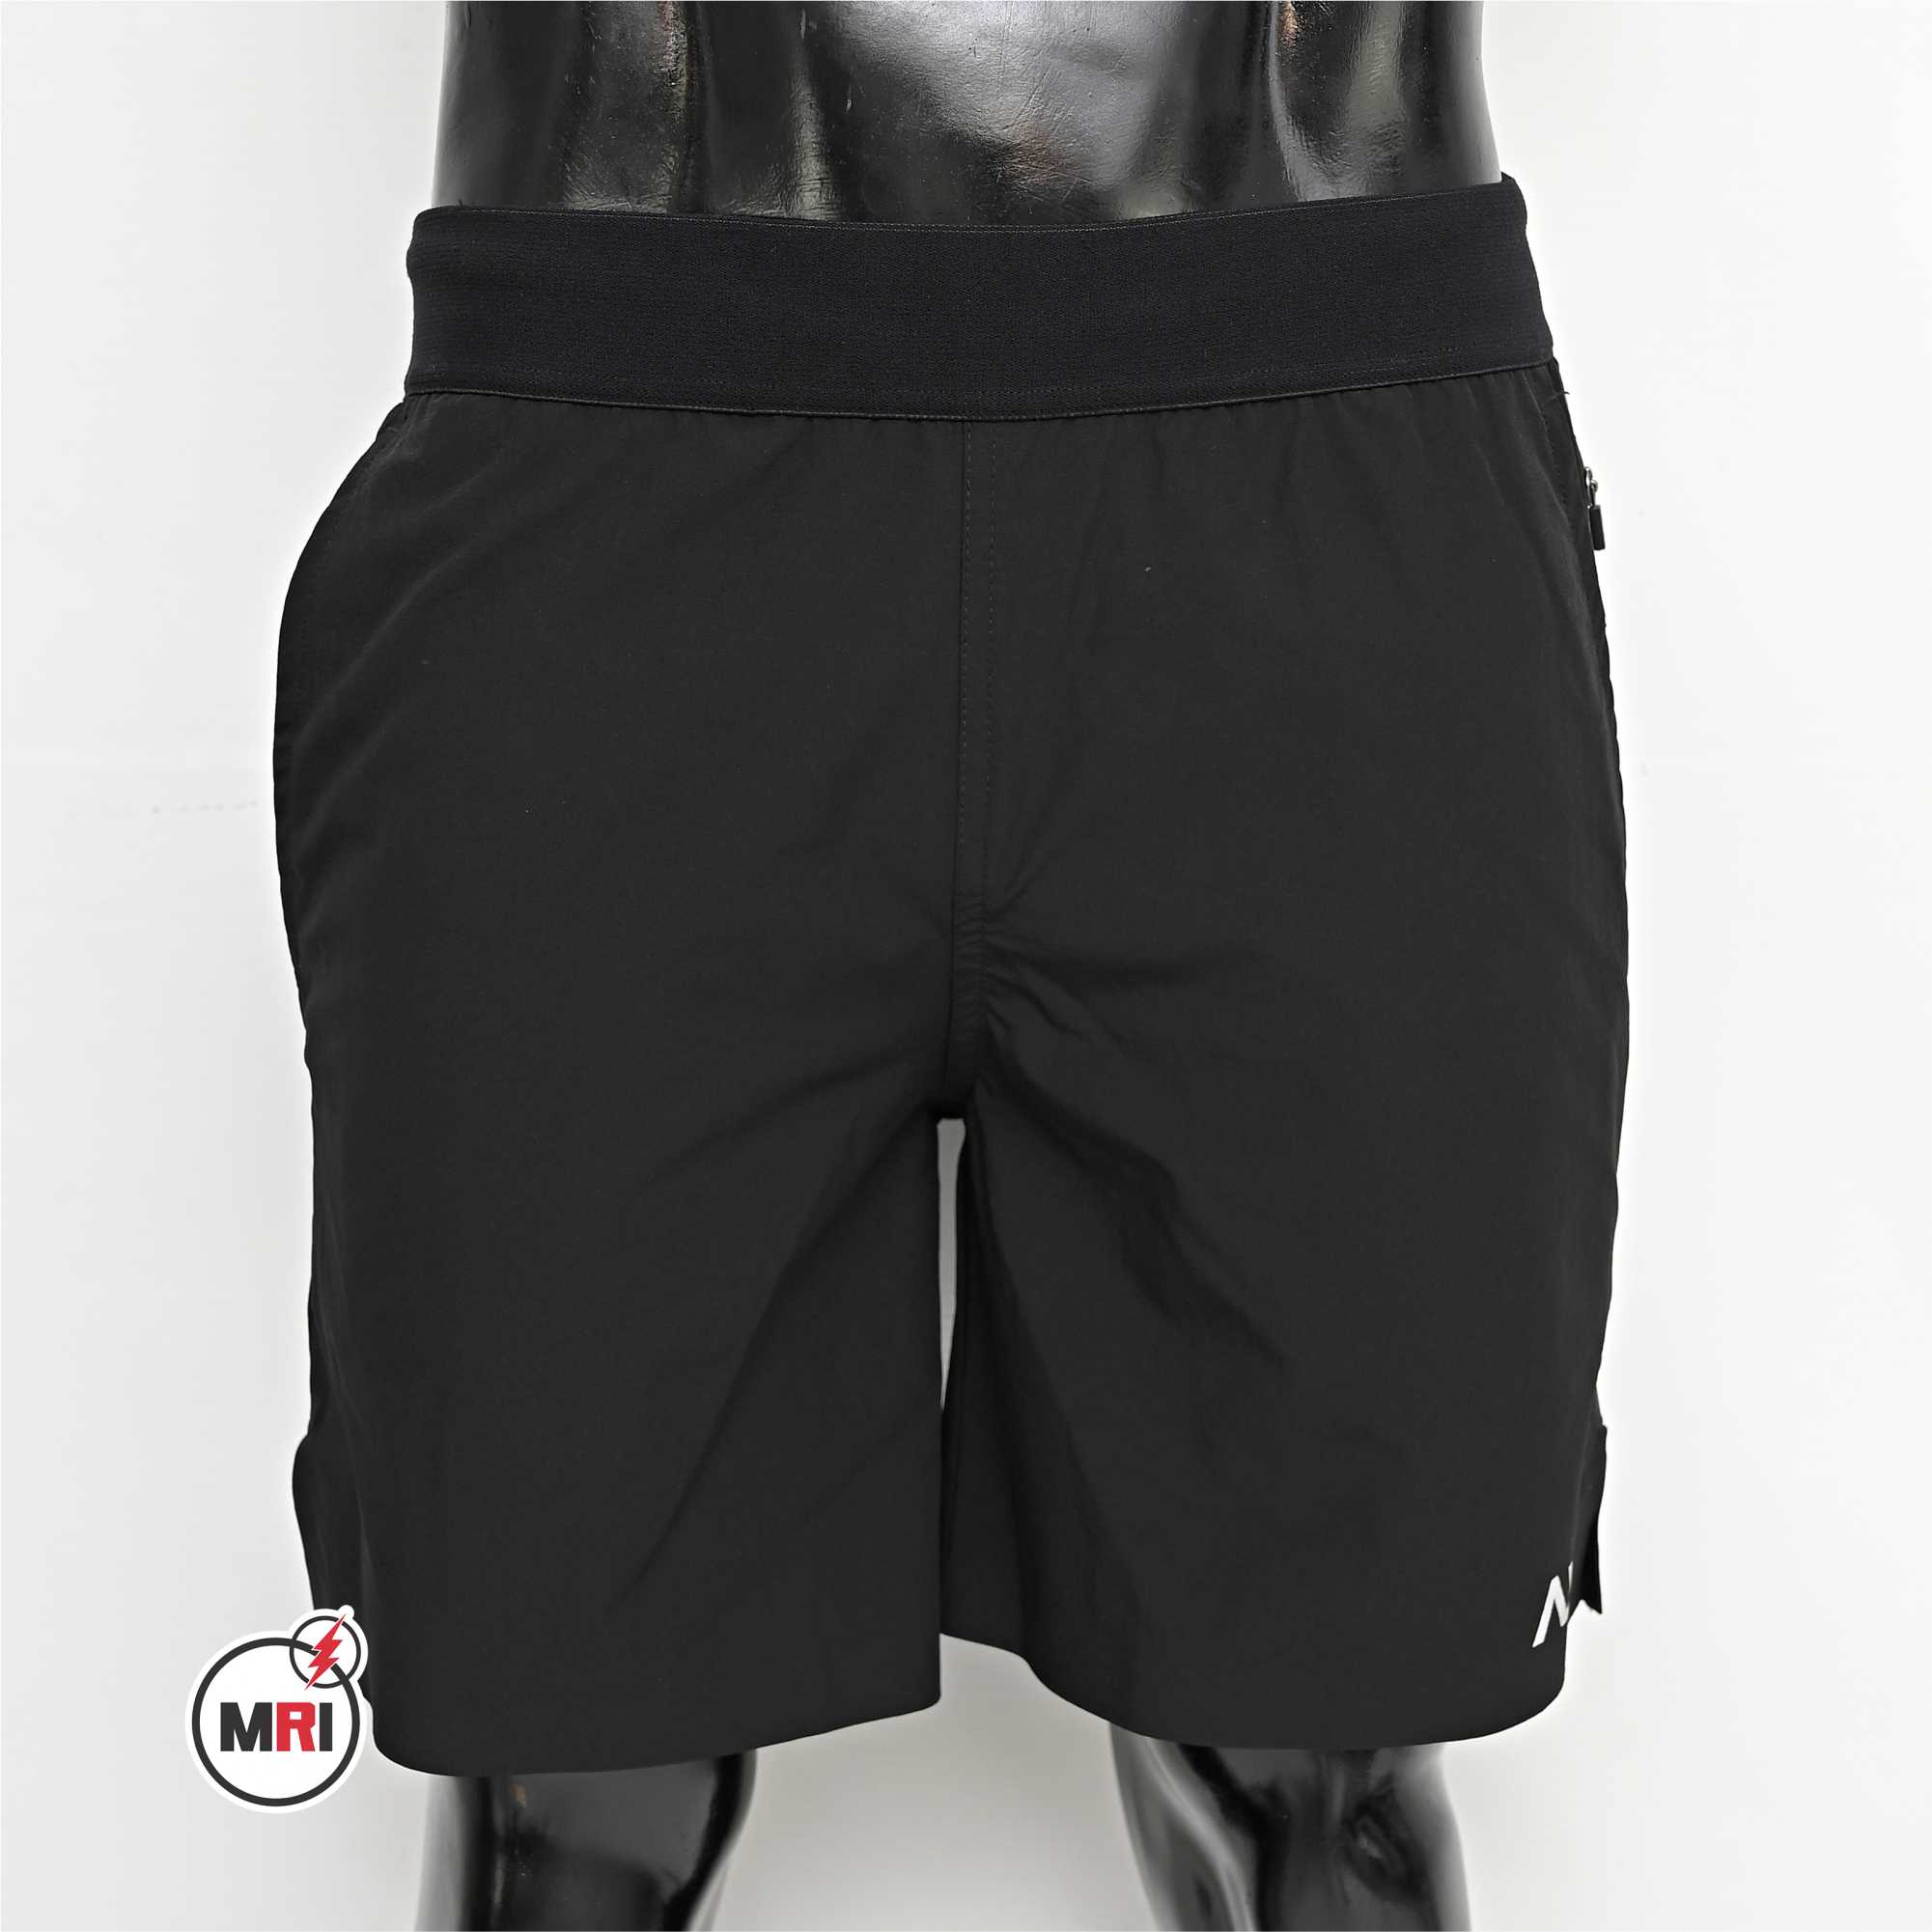 Customized Black Shorts